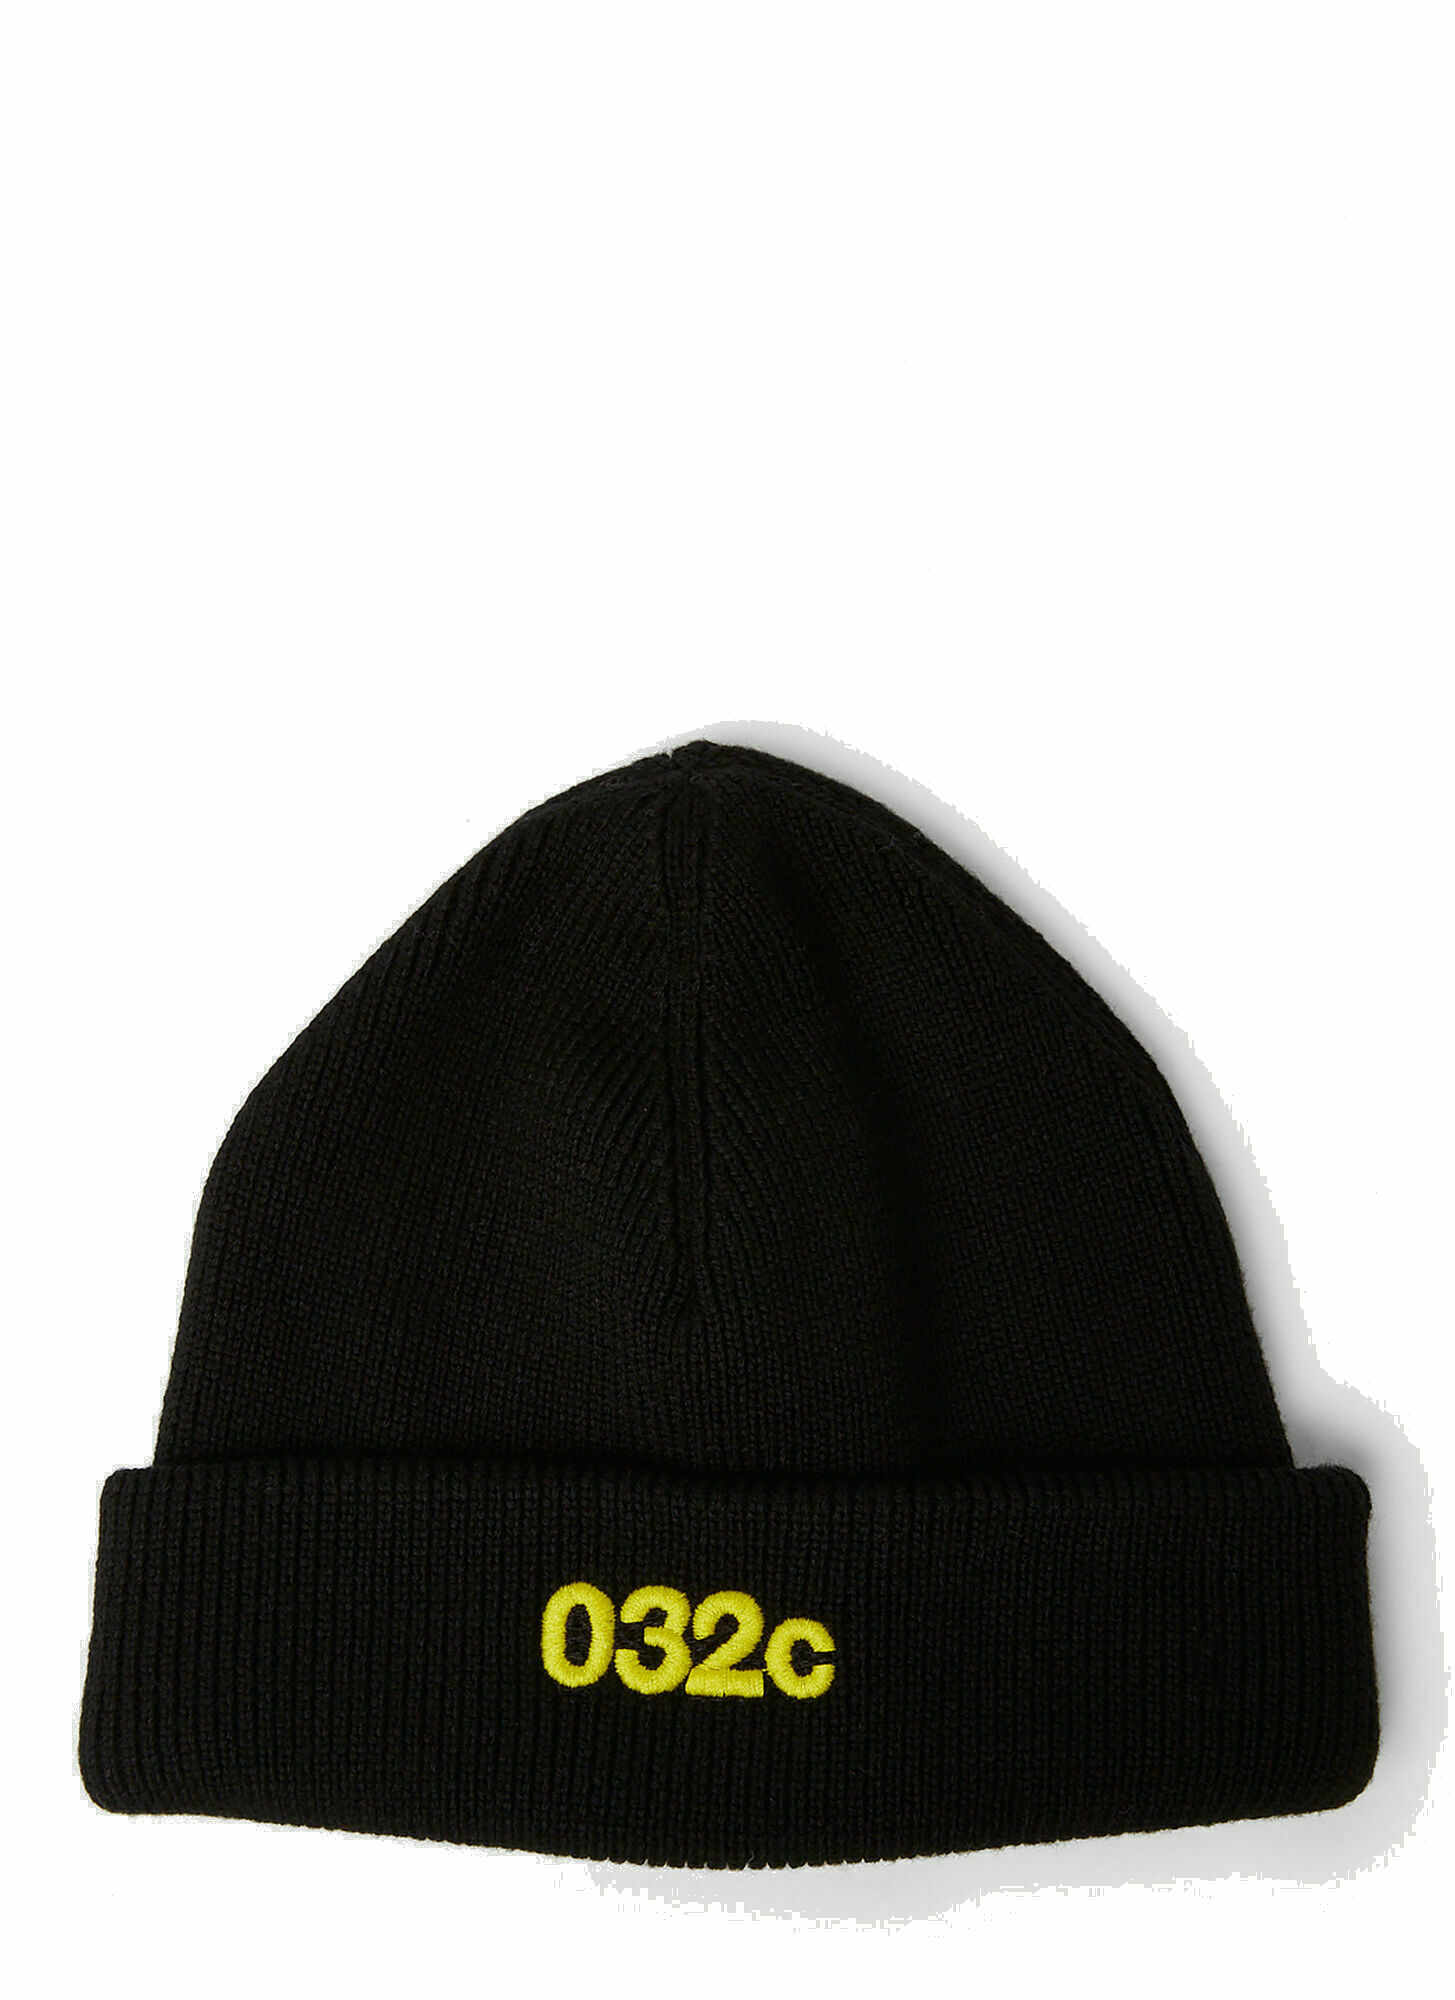 Photo: Selfie Beanie Hat in Black